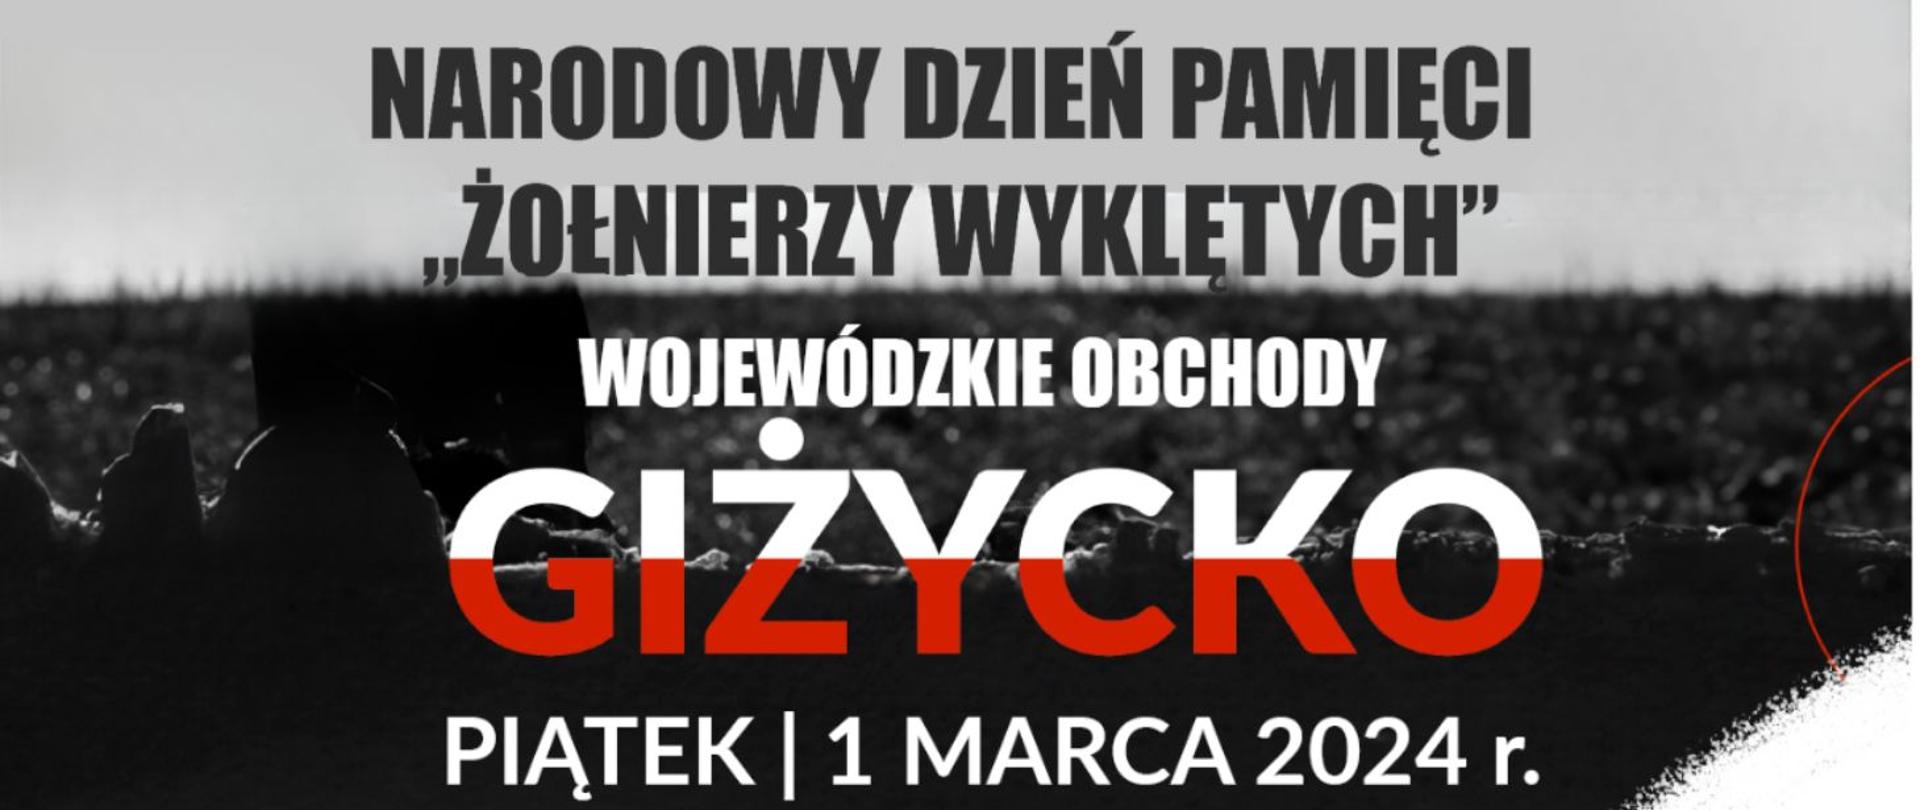 Zapraszamy na Wojewódzkie Obchody Narodowego Dnia Pamięci "Żołnierzy Wyklętych" w Gizycku